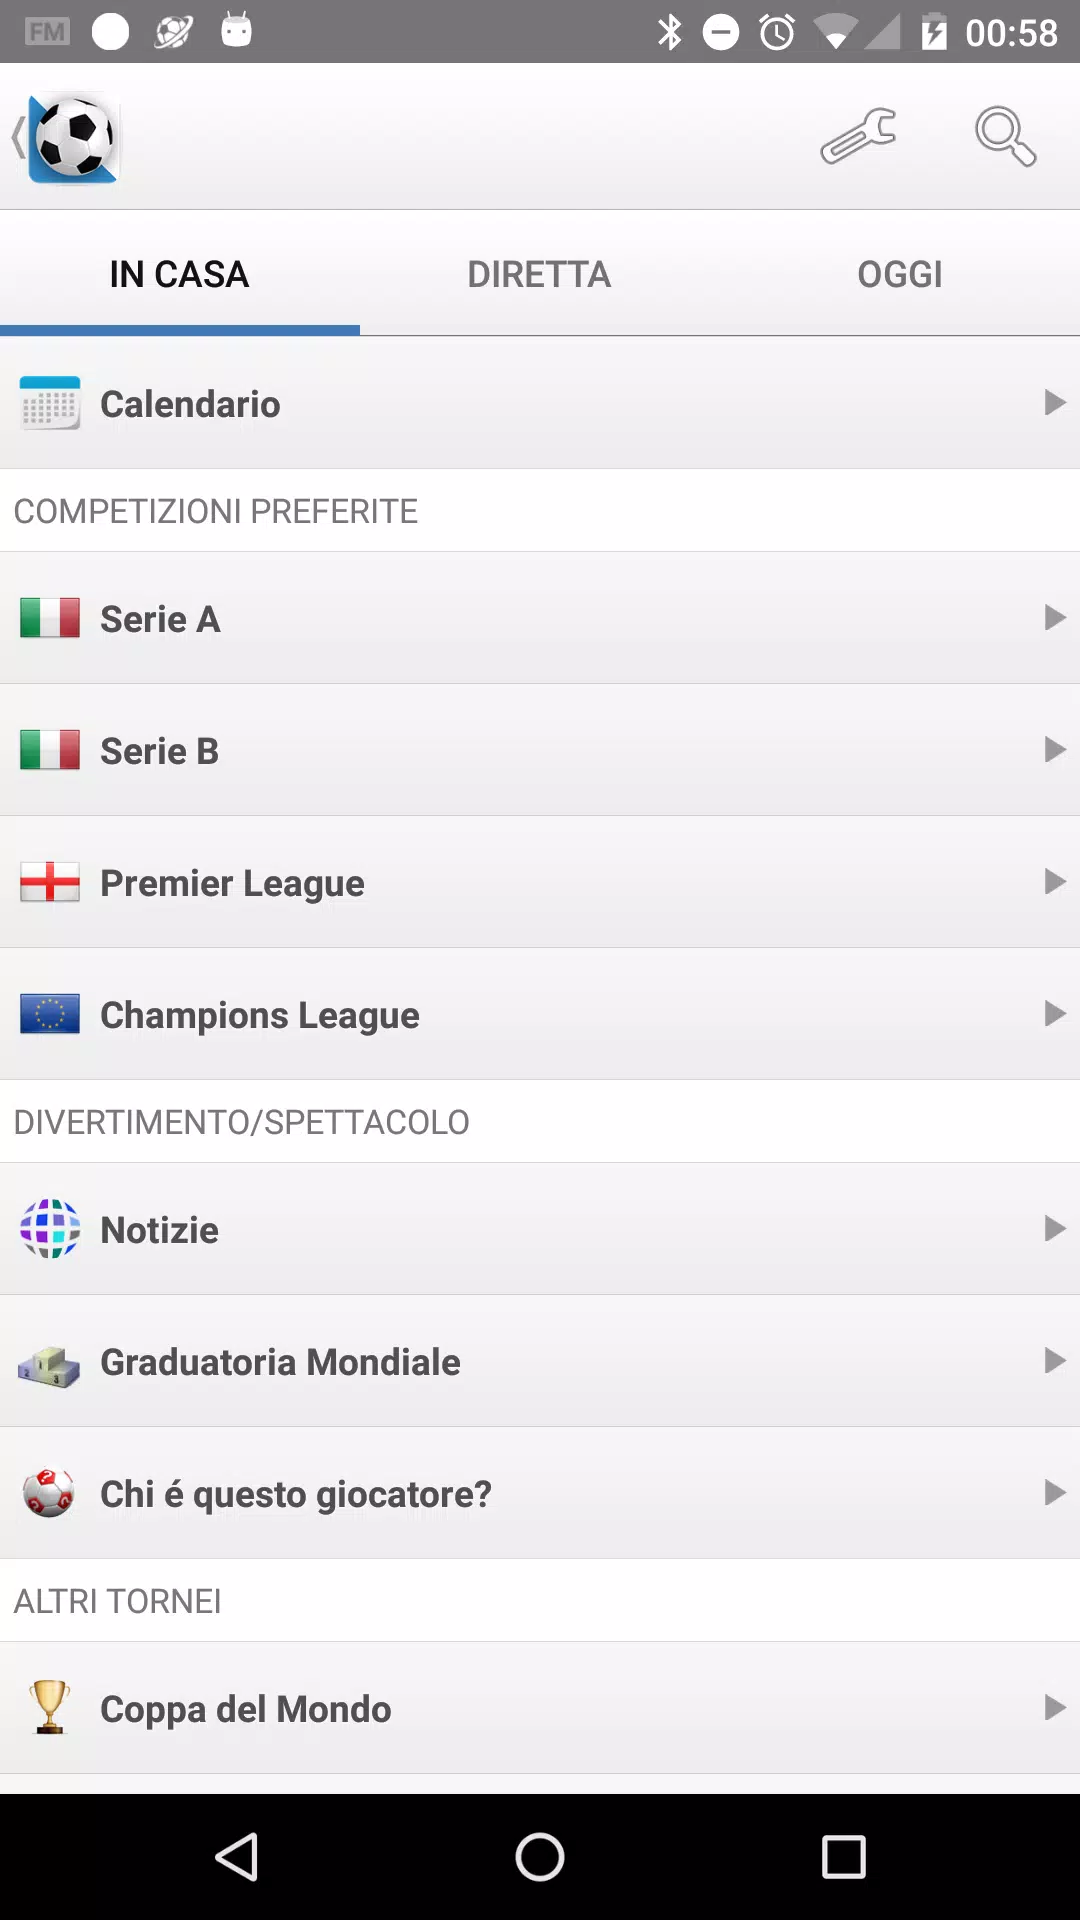 Calcio Risultati in Diretta for Android - APK Download